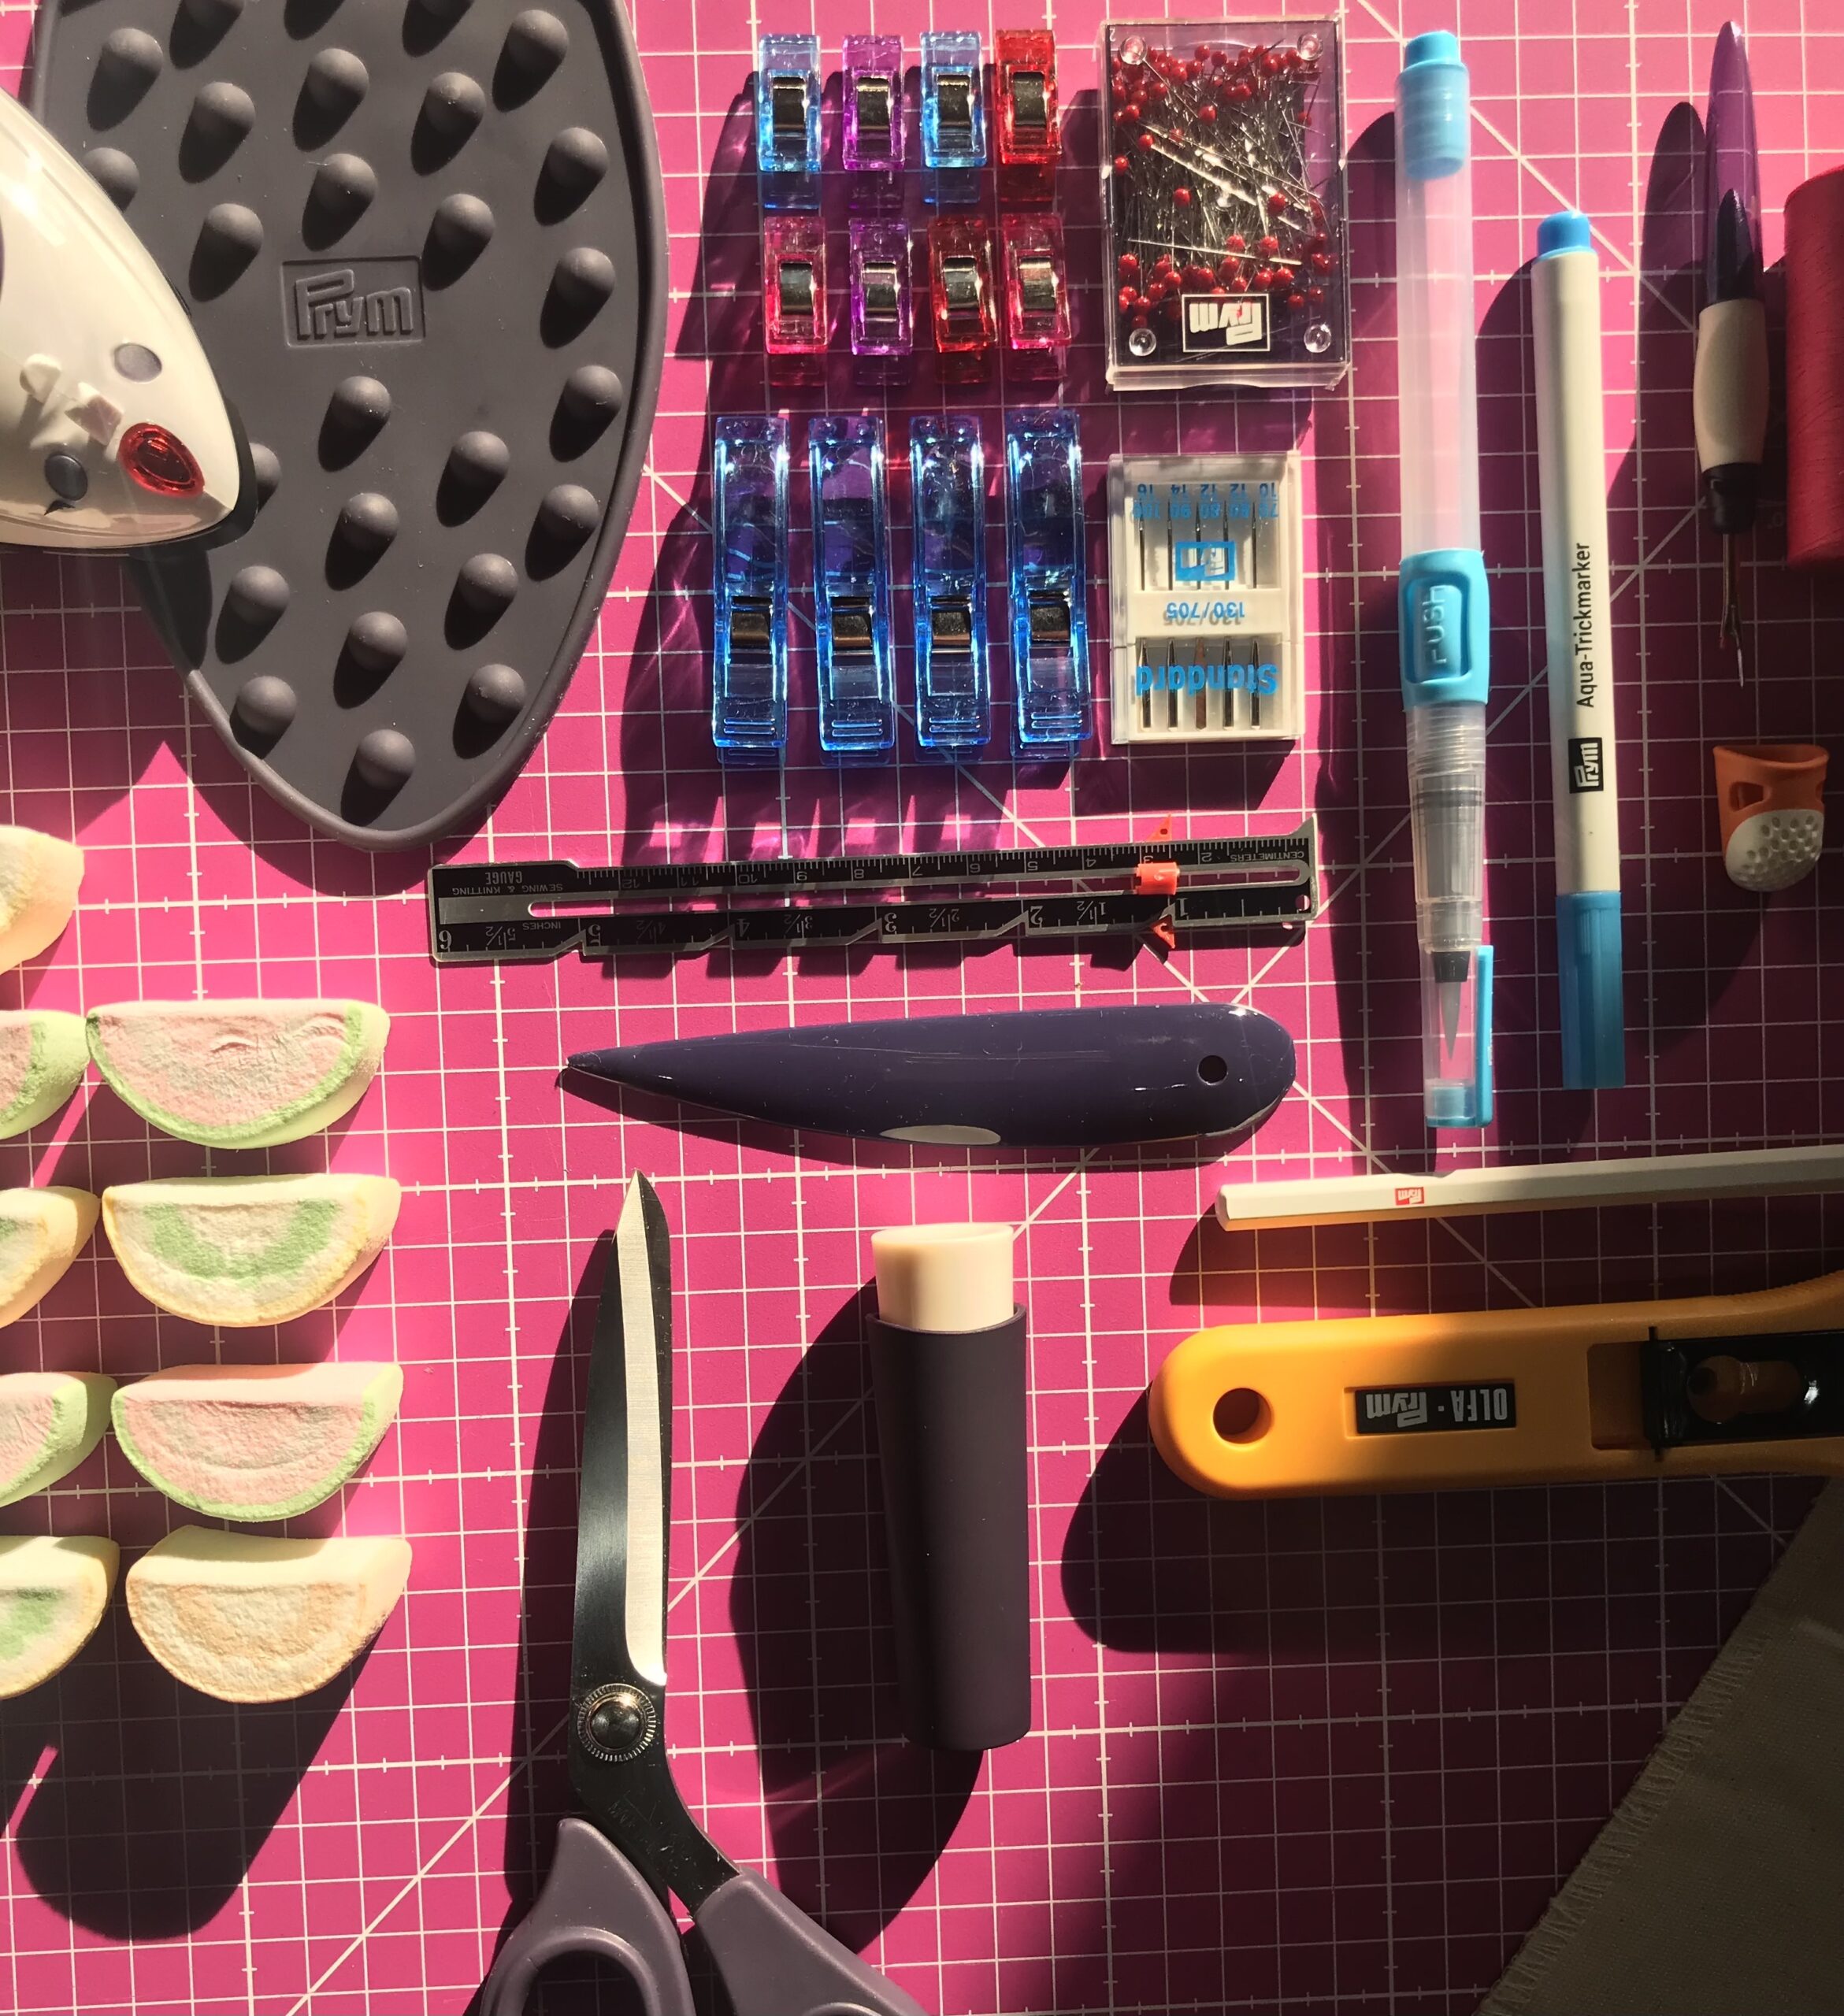 Piano di lavoro con materiali per cucire come forbici, penne, aghi e filo